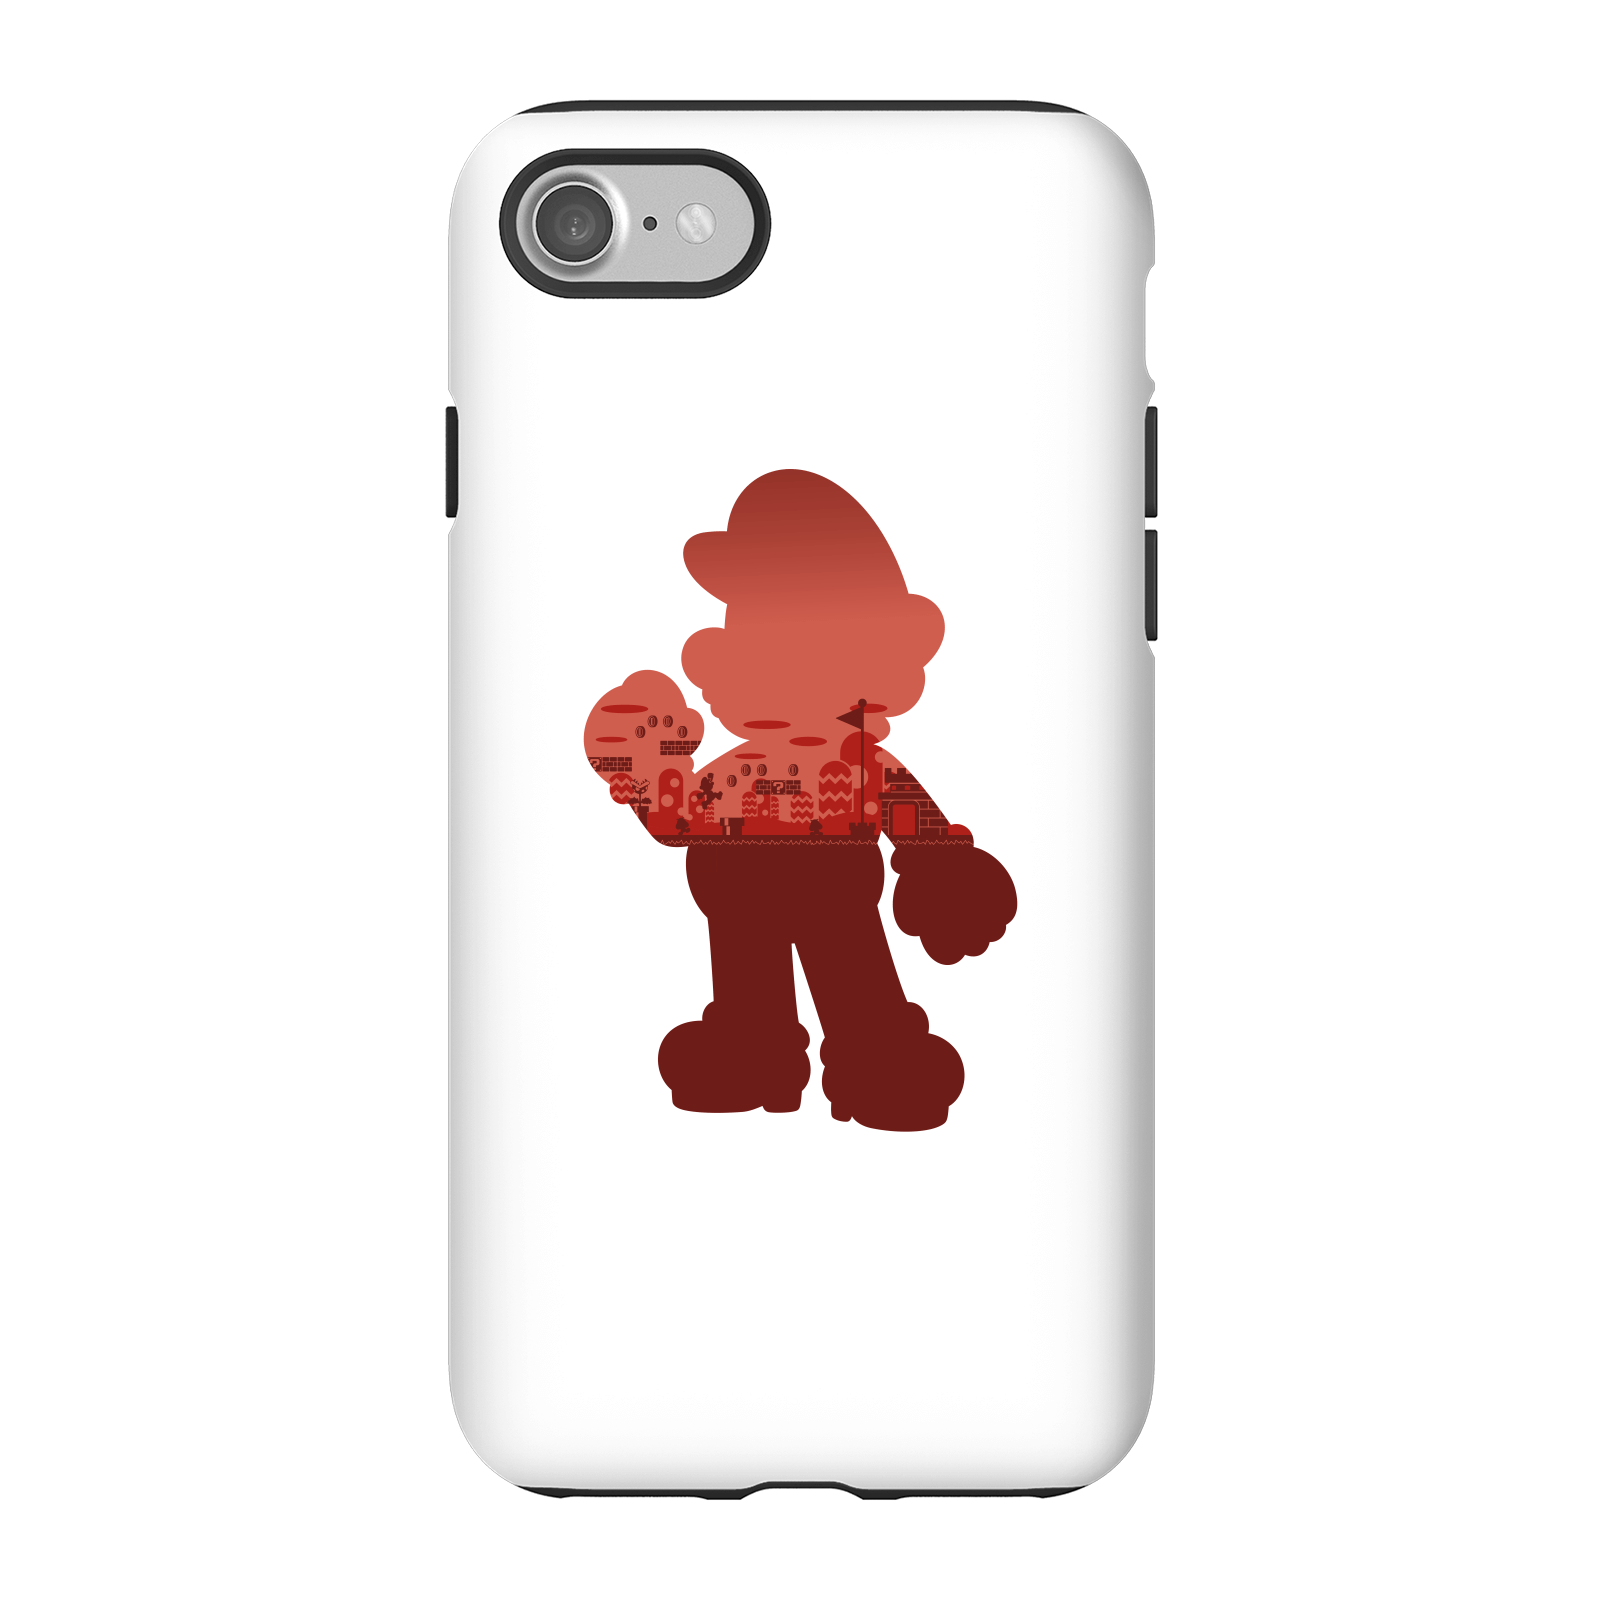 Nintendo Super Mario Mario Silhouette Phone Case - iPhone 7 - Tough Case - Gloss